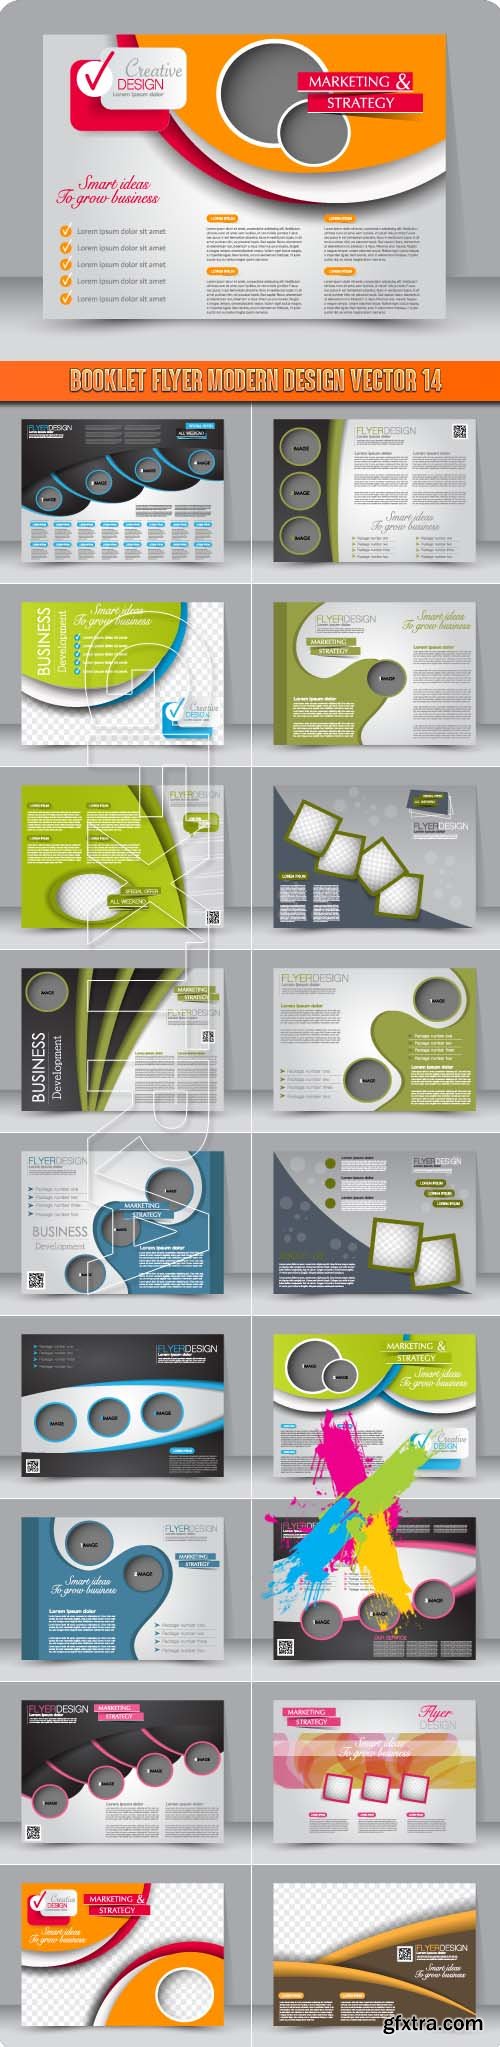 Booklet flyer modern design vector 14